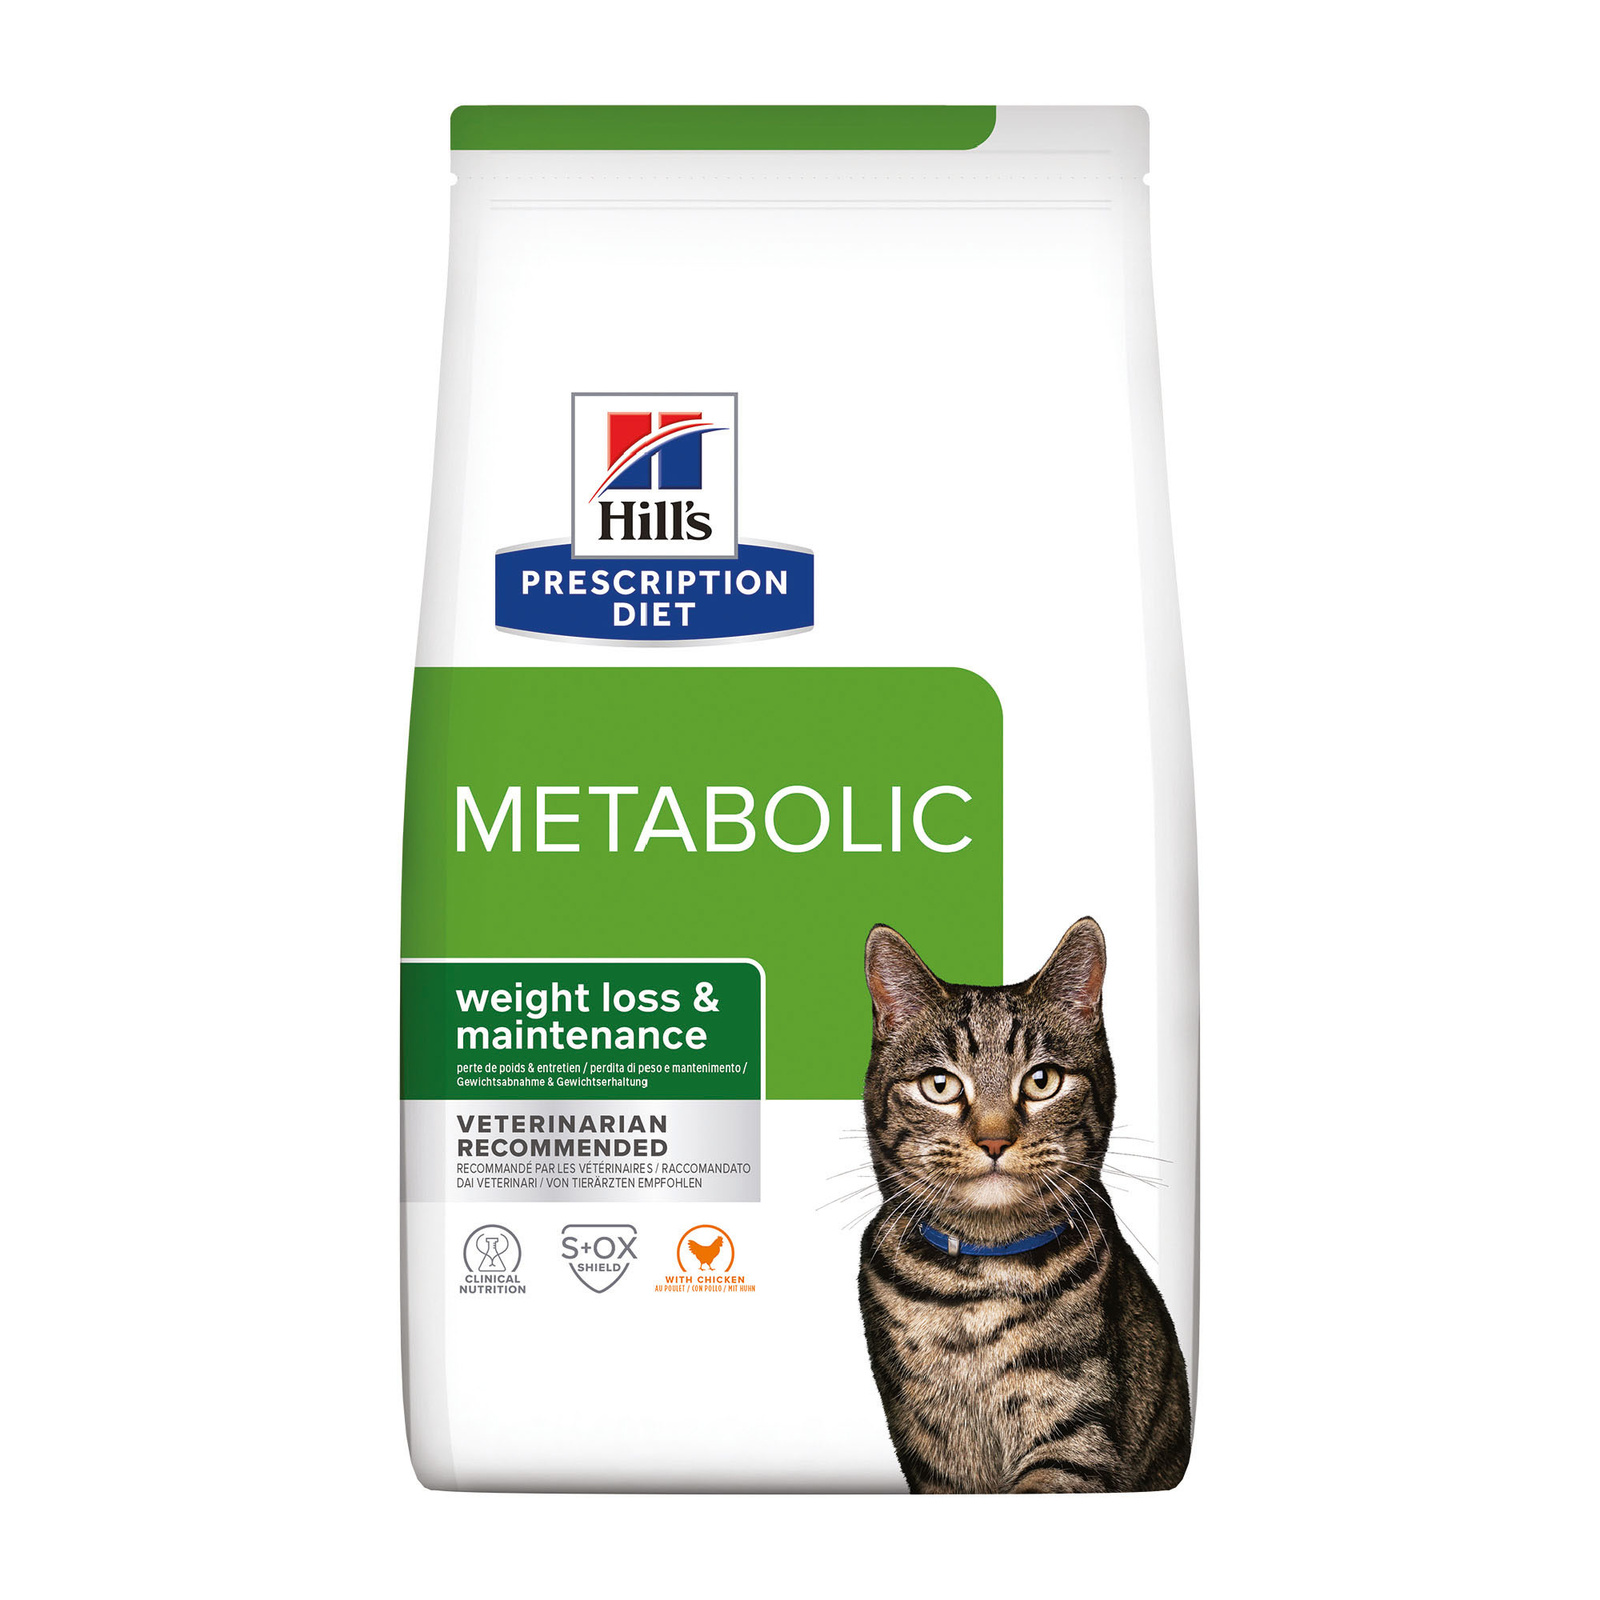 Hill's Prescription Diet сухой диетический корм для кошек Metabolic способствует снижению и контролю веса, с курицей (8 кг) - фото 1